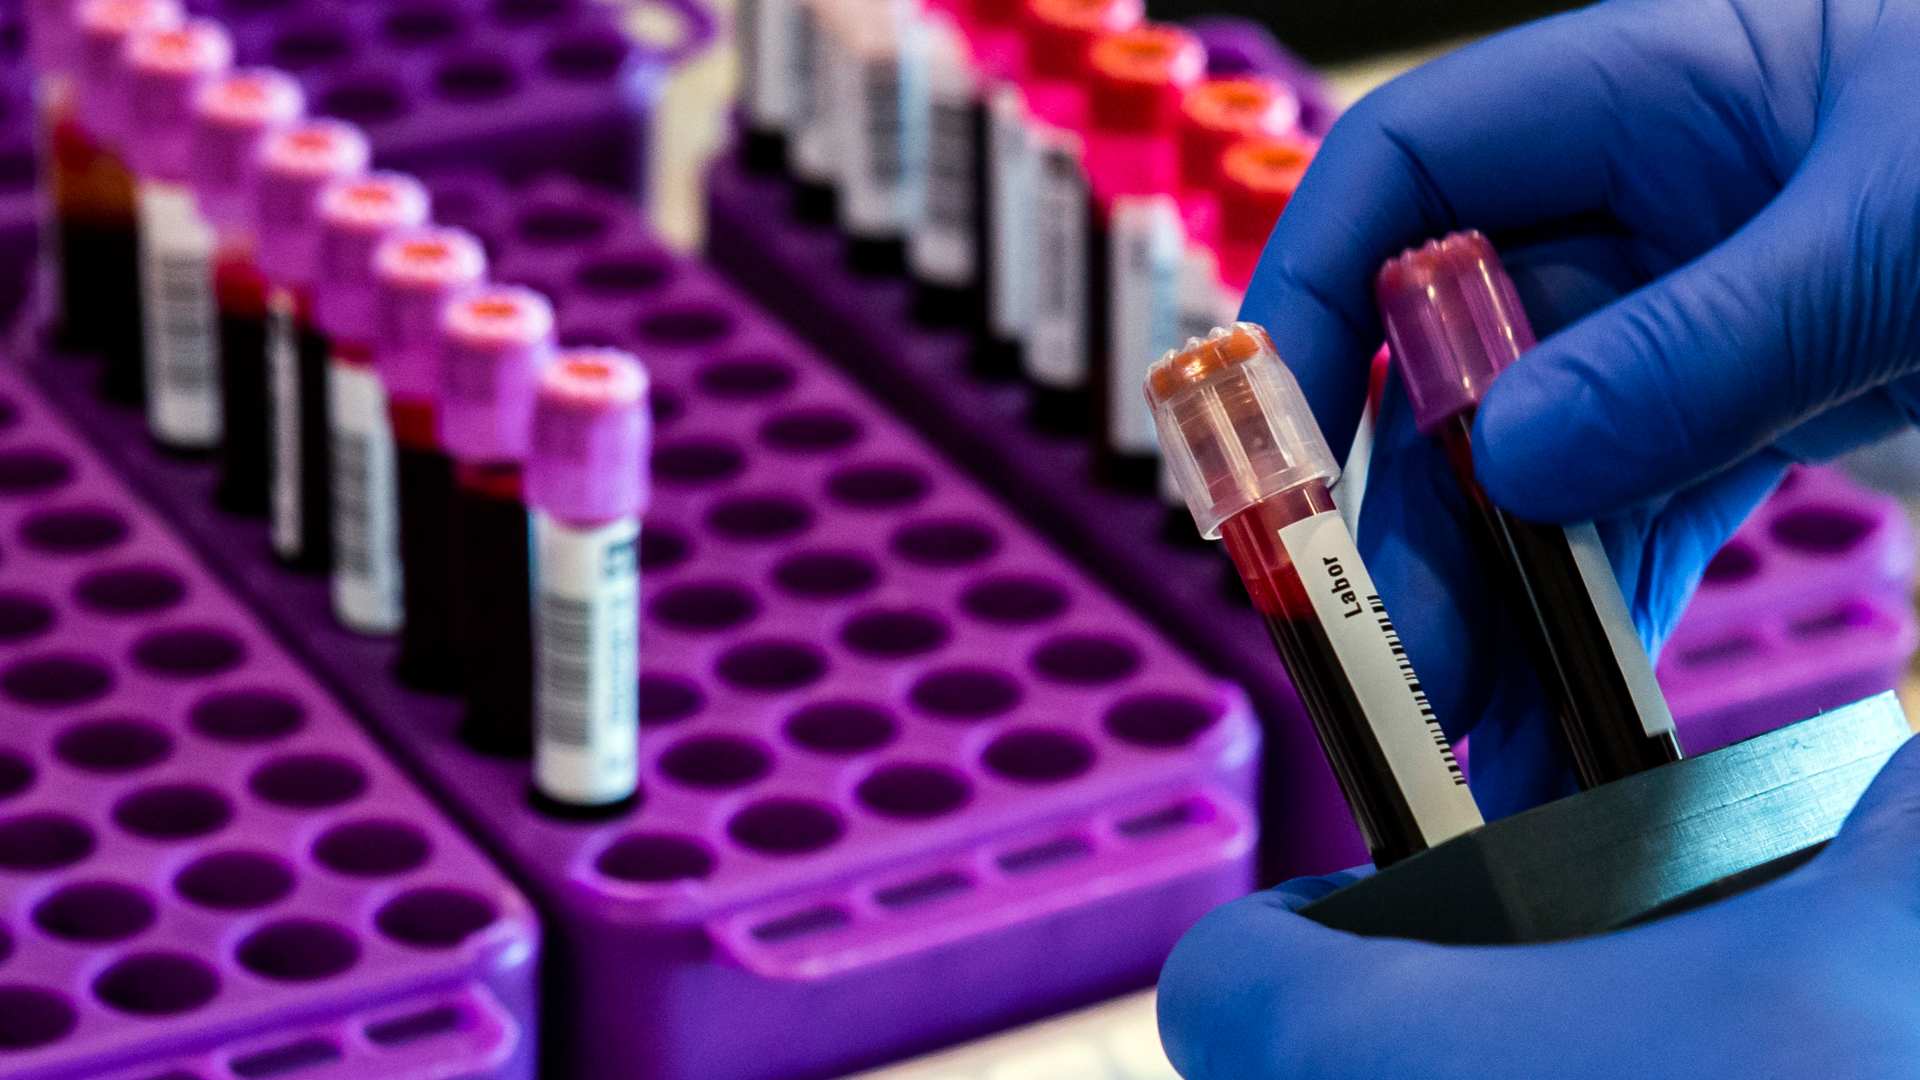 Un nuevo análisis de sangre detecta hasta 50 tipos de cáncer